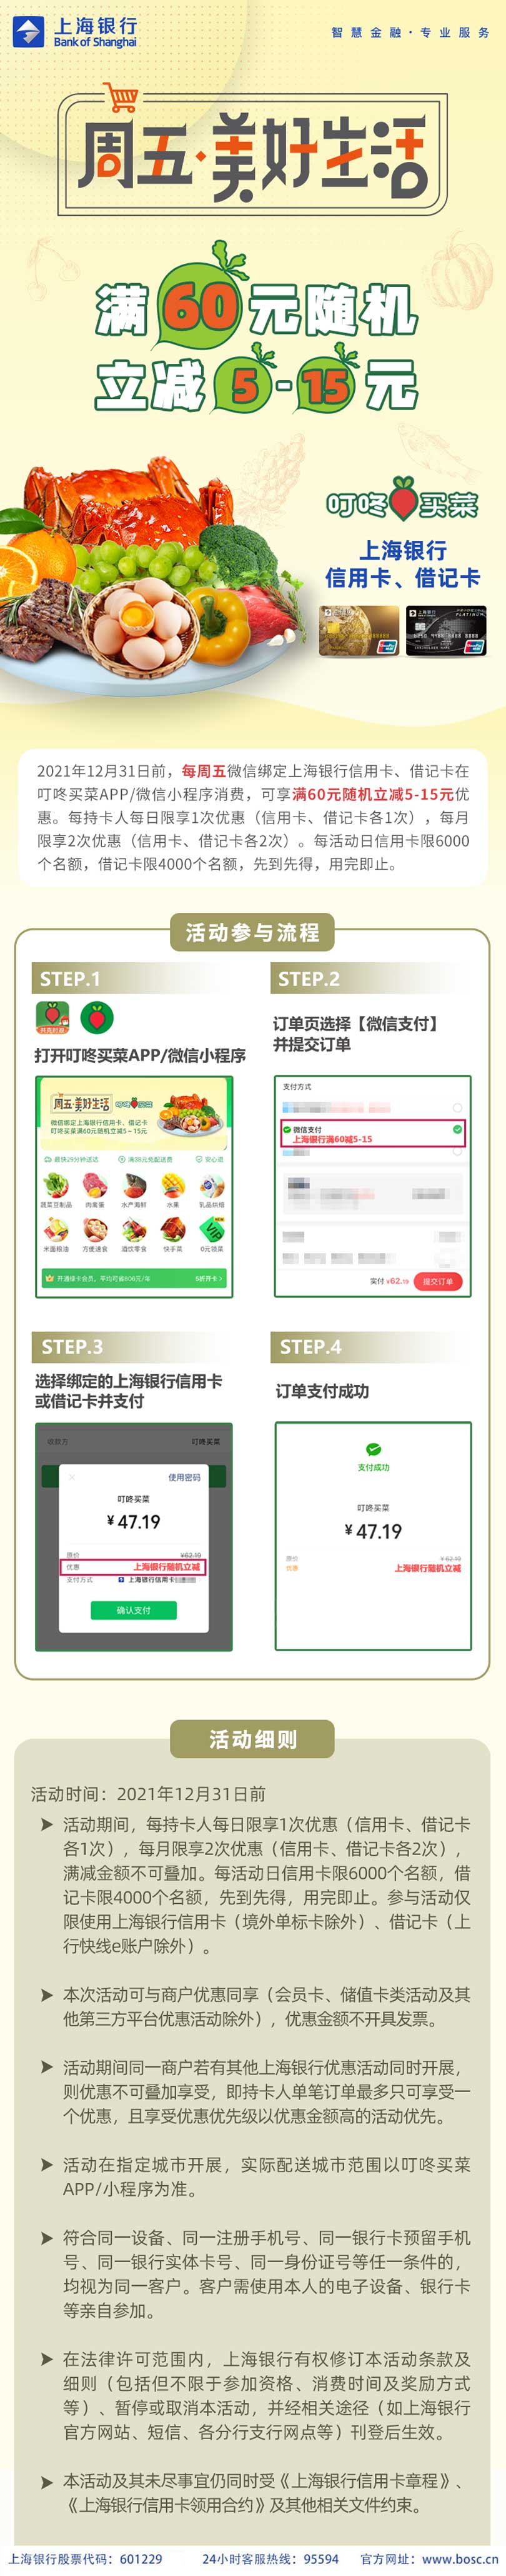 上海银行卡叮咚买菜满60元随机立减5-15元